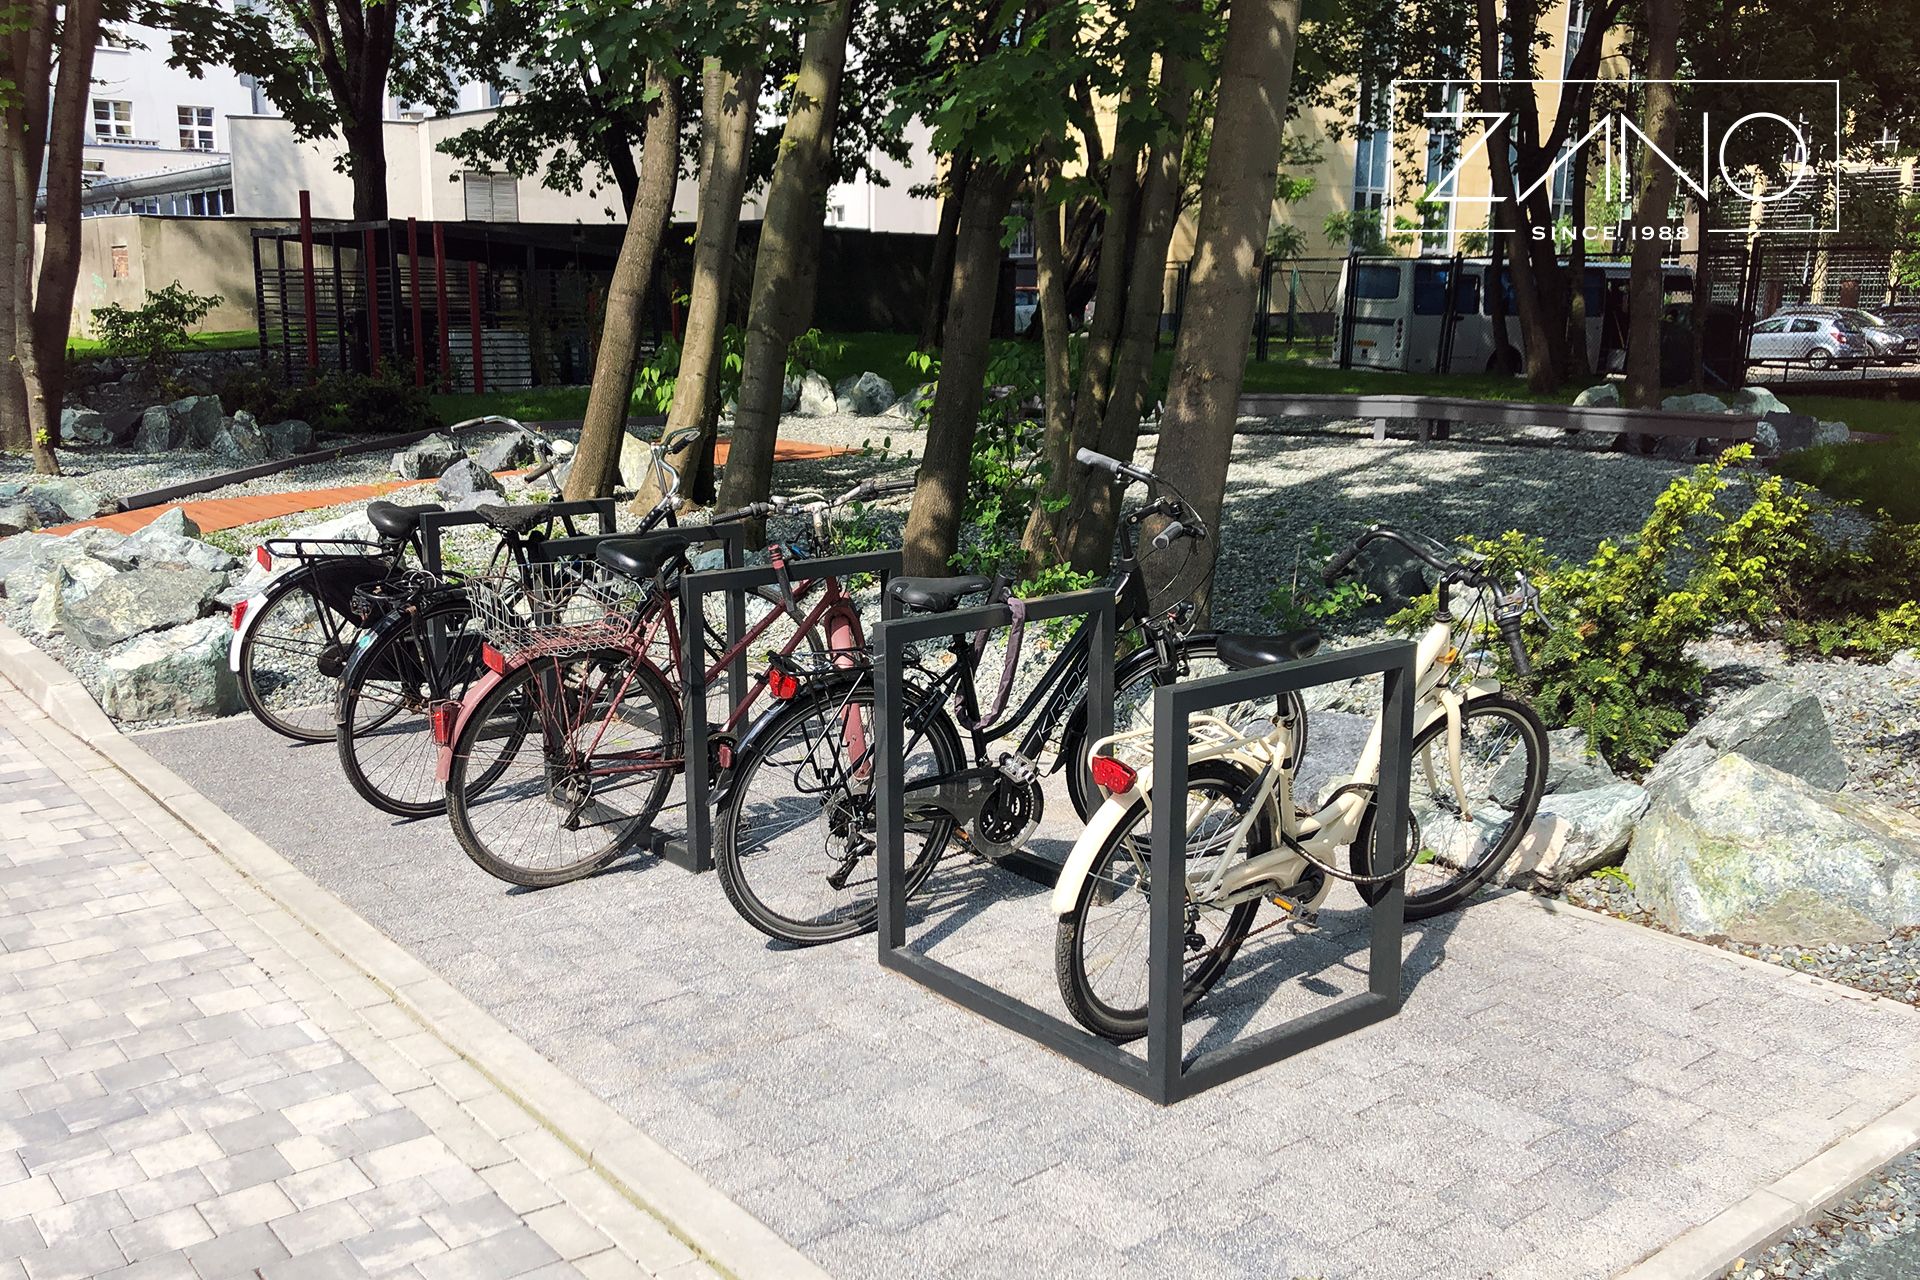 Bicycle rack made of steel painted black